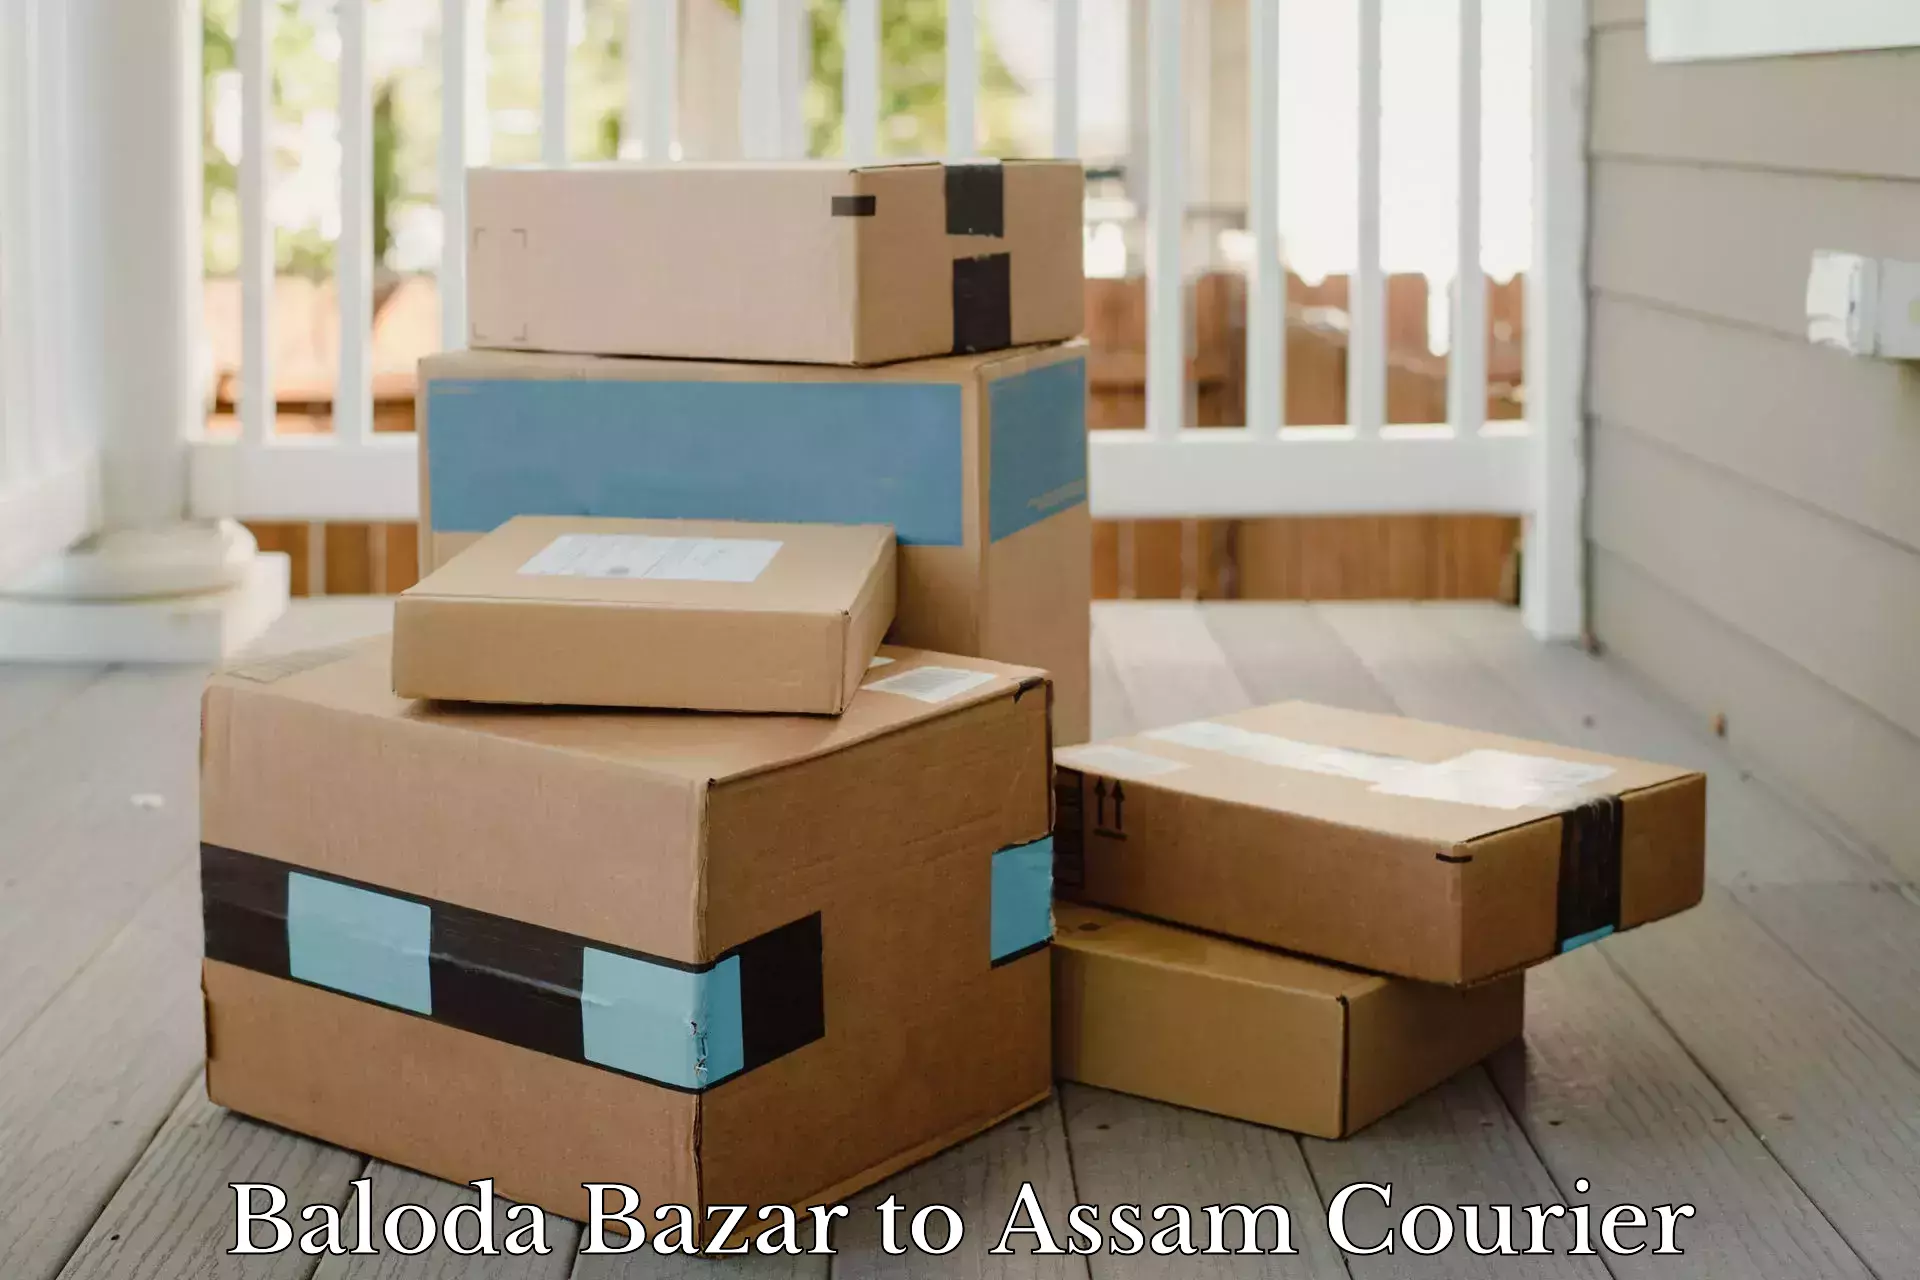 Express package transport Baloda Bazar to Assam